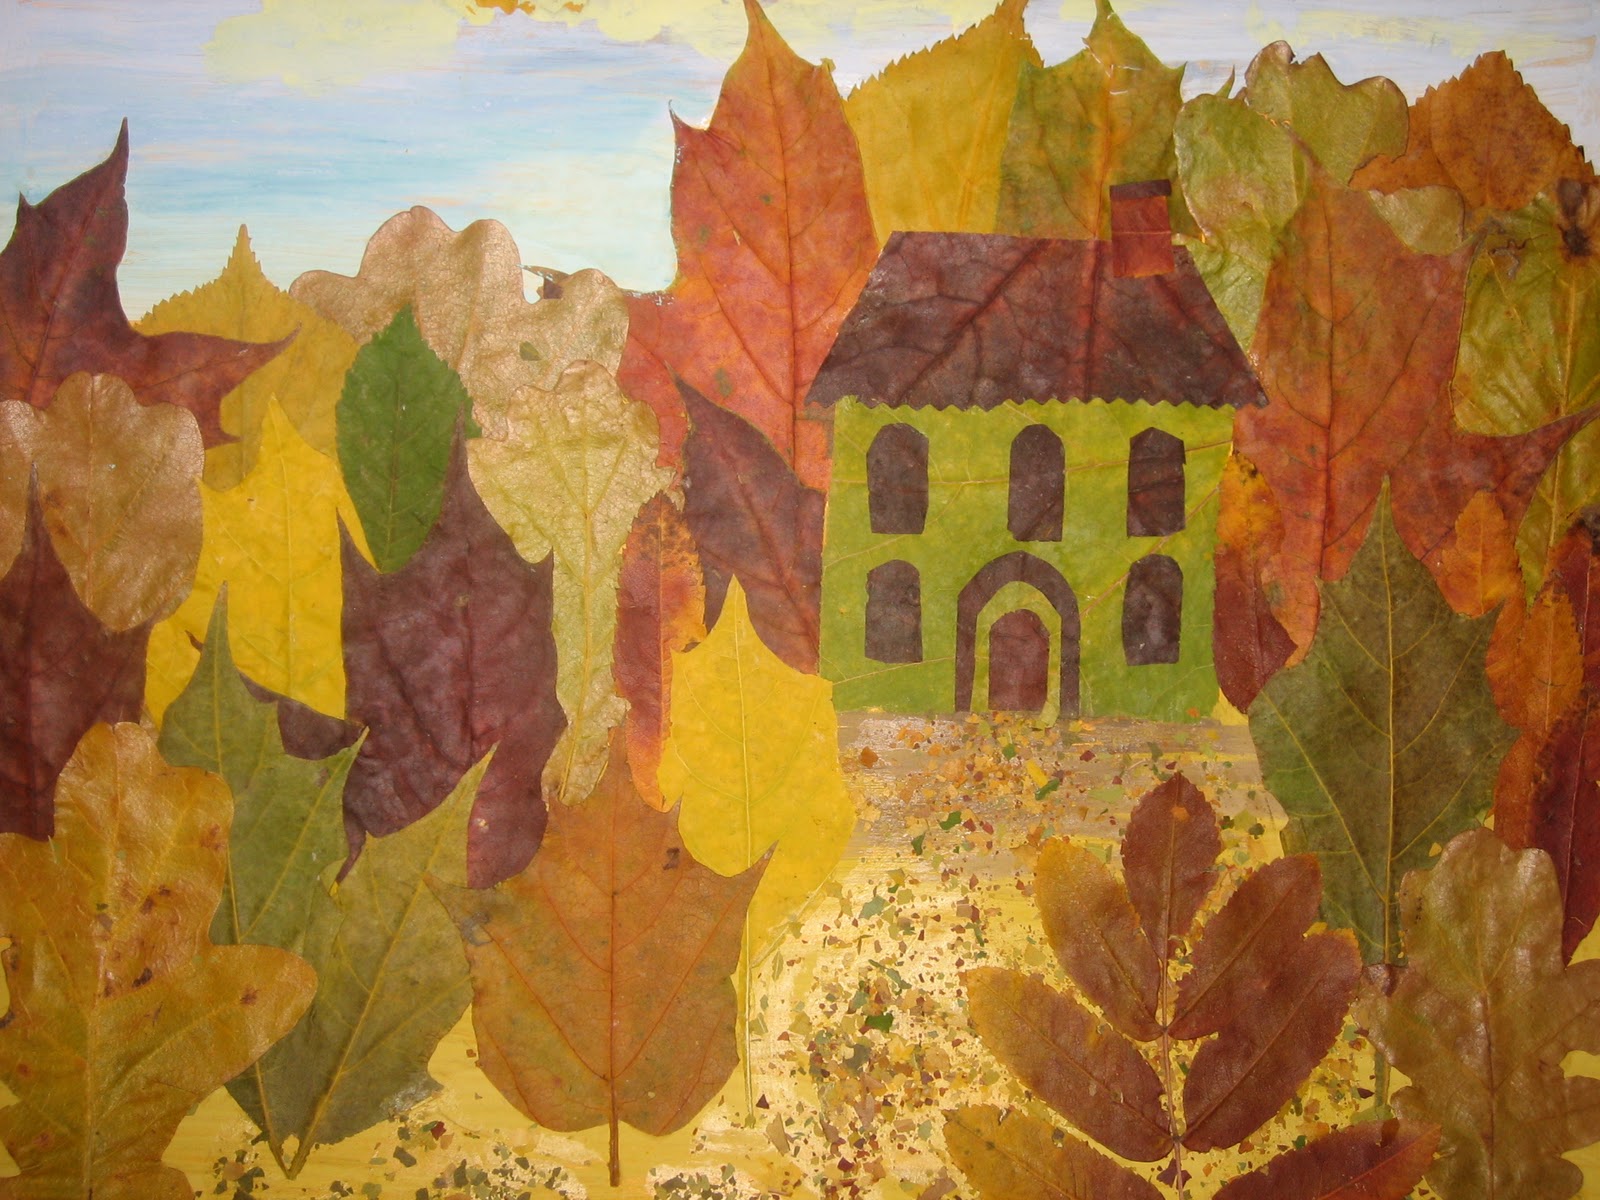 Осенние поделки из листьев своими руками (все новинки для детей детского сада и школы)